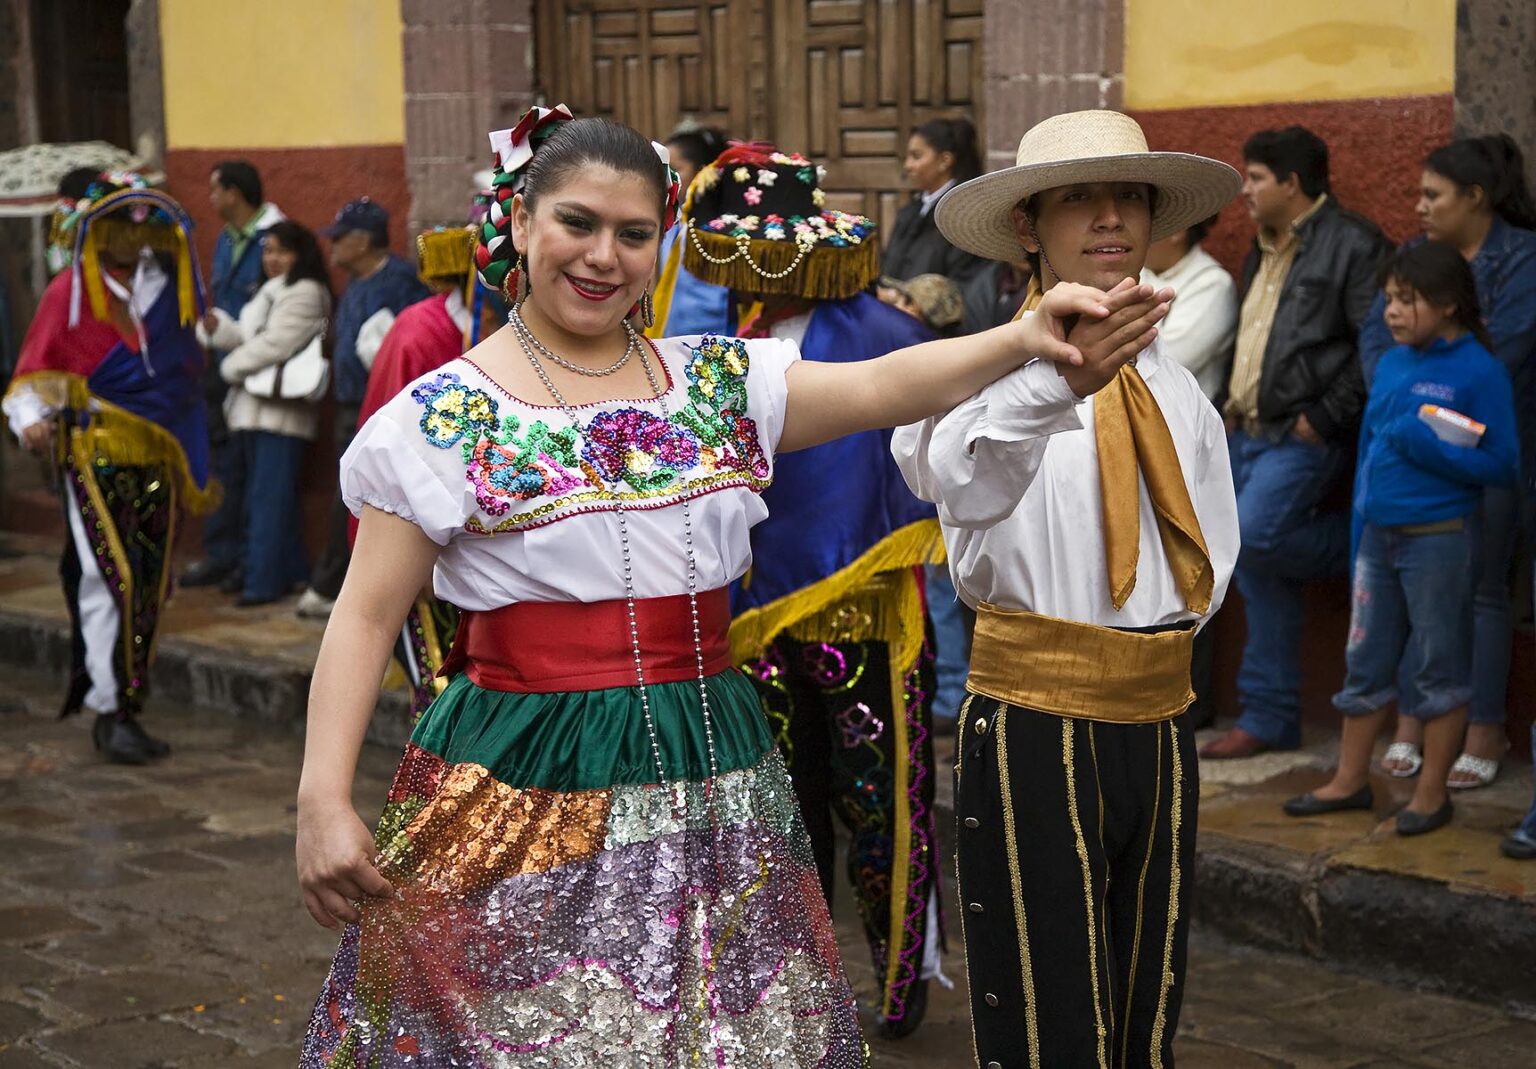 A MEXICAN couple in traditional PEASANT COSTUME walks in the FESTIVAL DE SAN MIGUEL ARCHANGEL PARADE - SAN MIGUEL DE ALLENDE, MEXICO